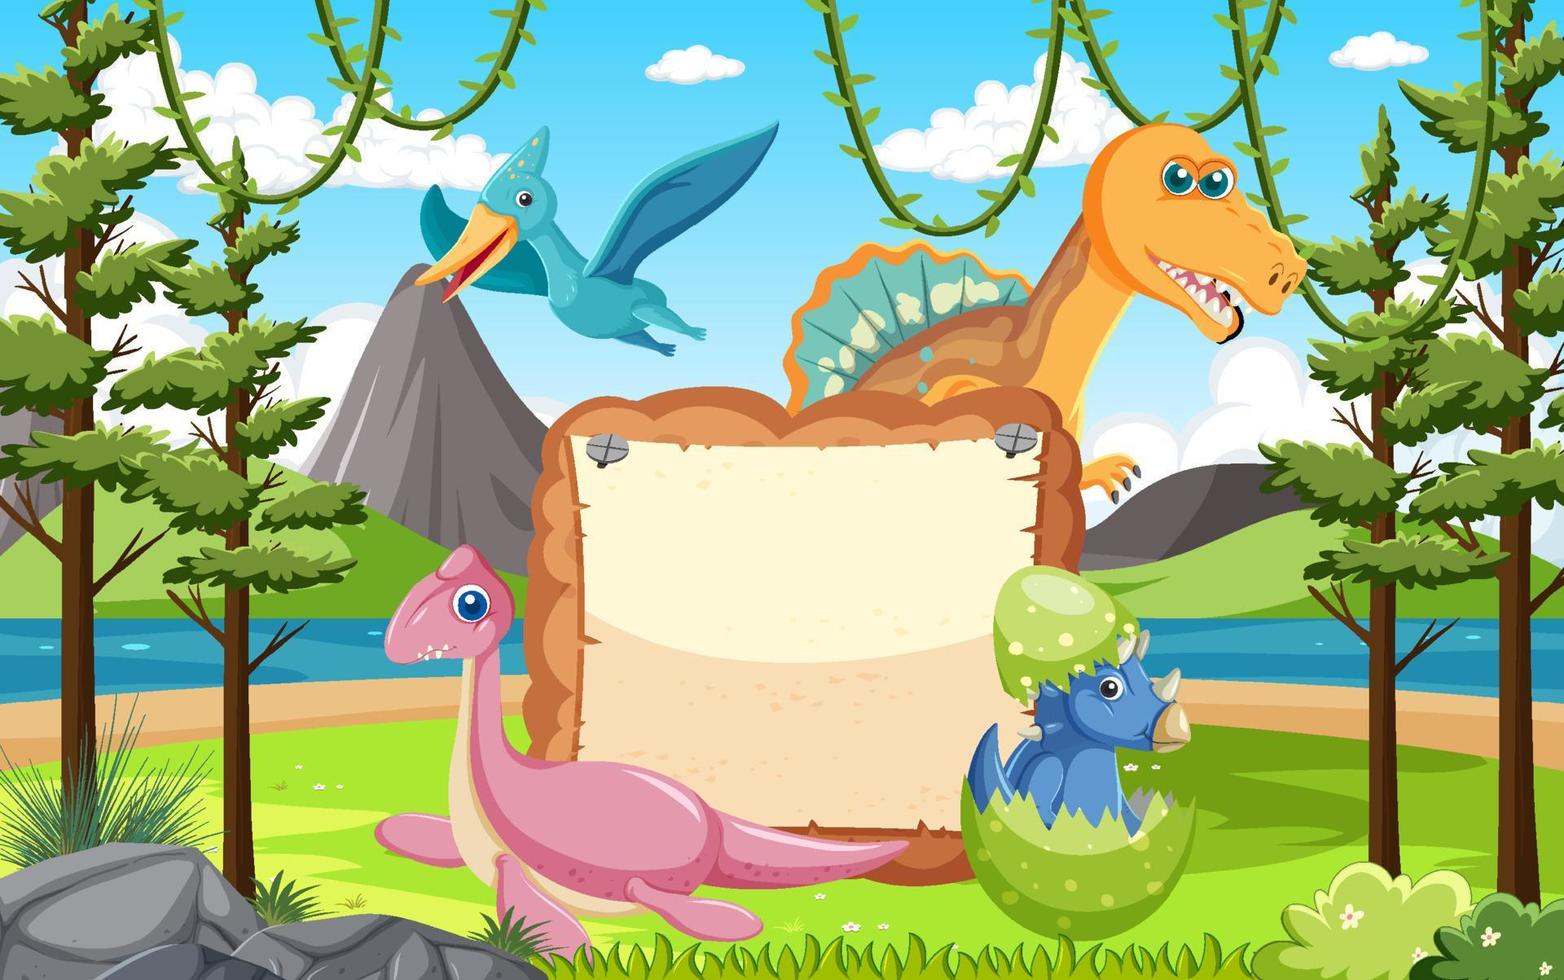 plateau vide avec des personnages de dessins animés de dinosaures mignons vecteur